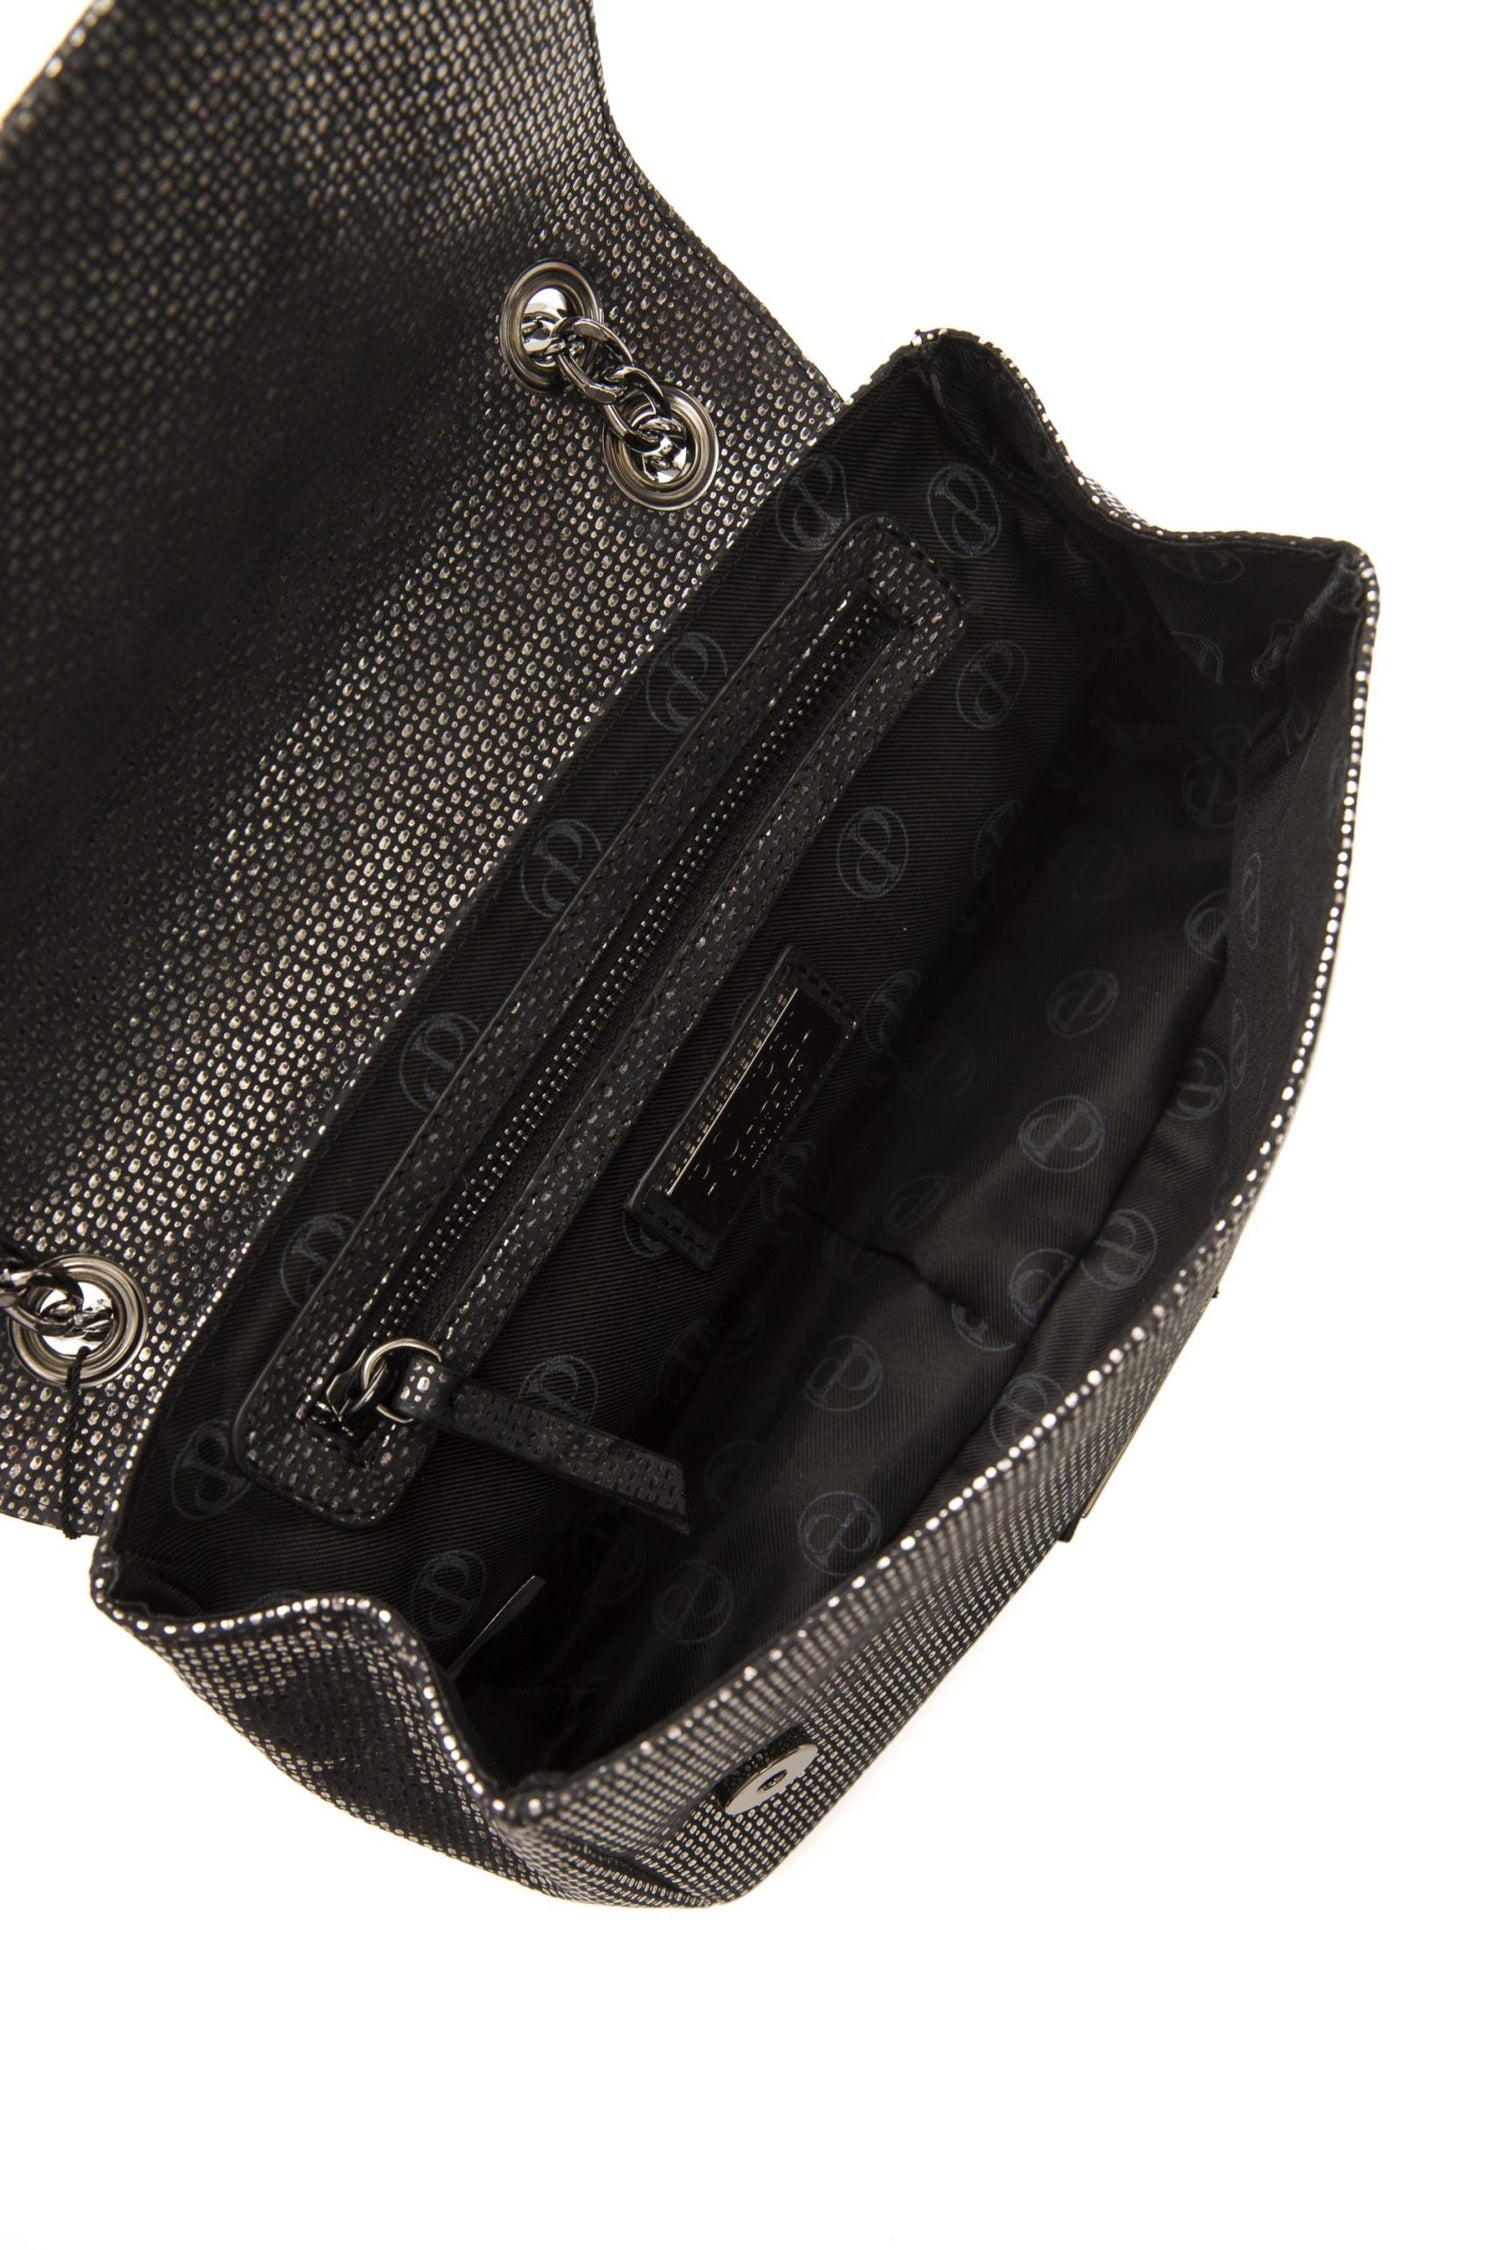 Pompei Donatella Gray Leather Crossbody Bag - DEA STILOSA MILANO